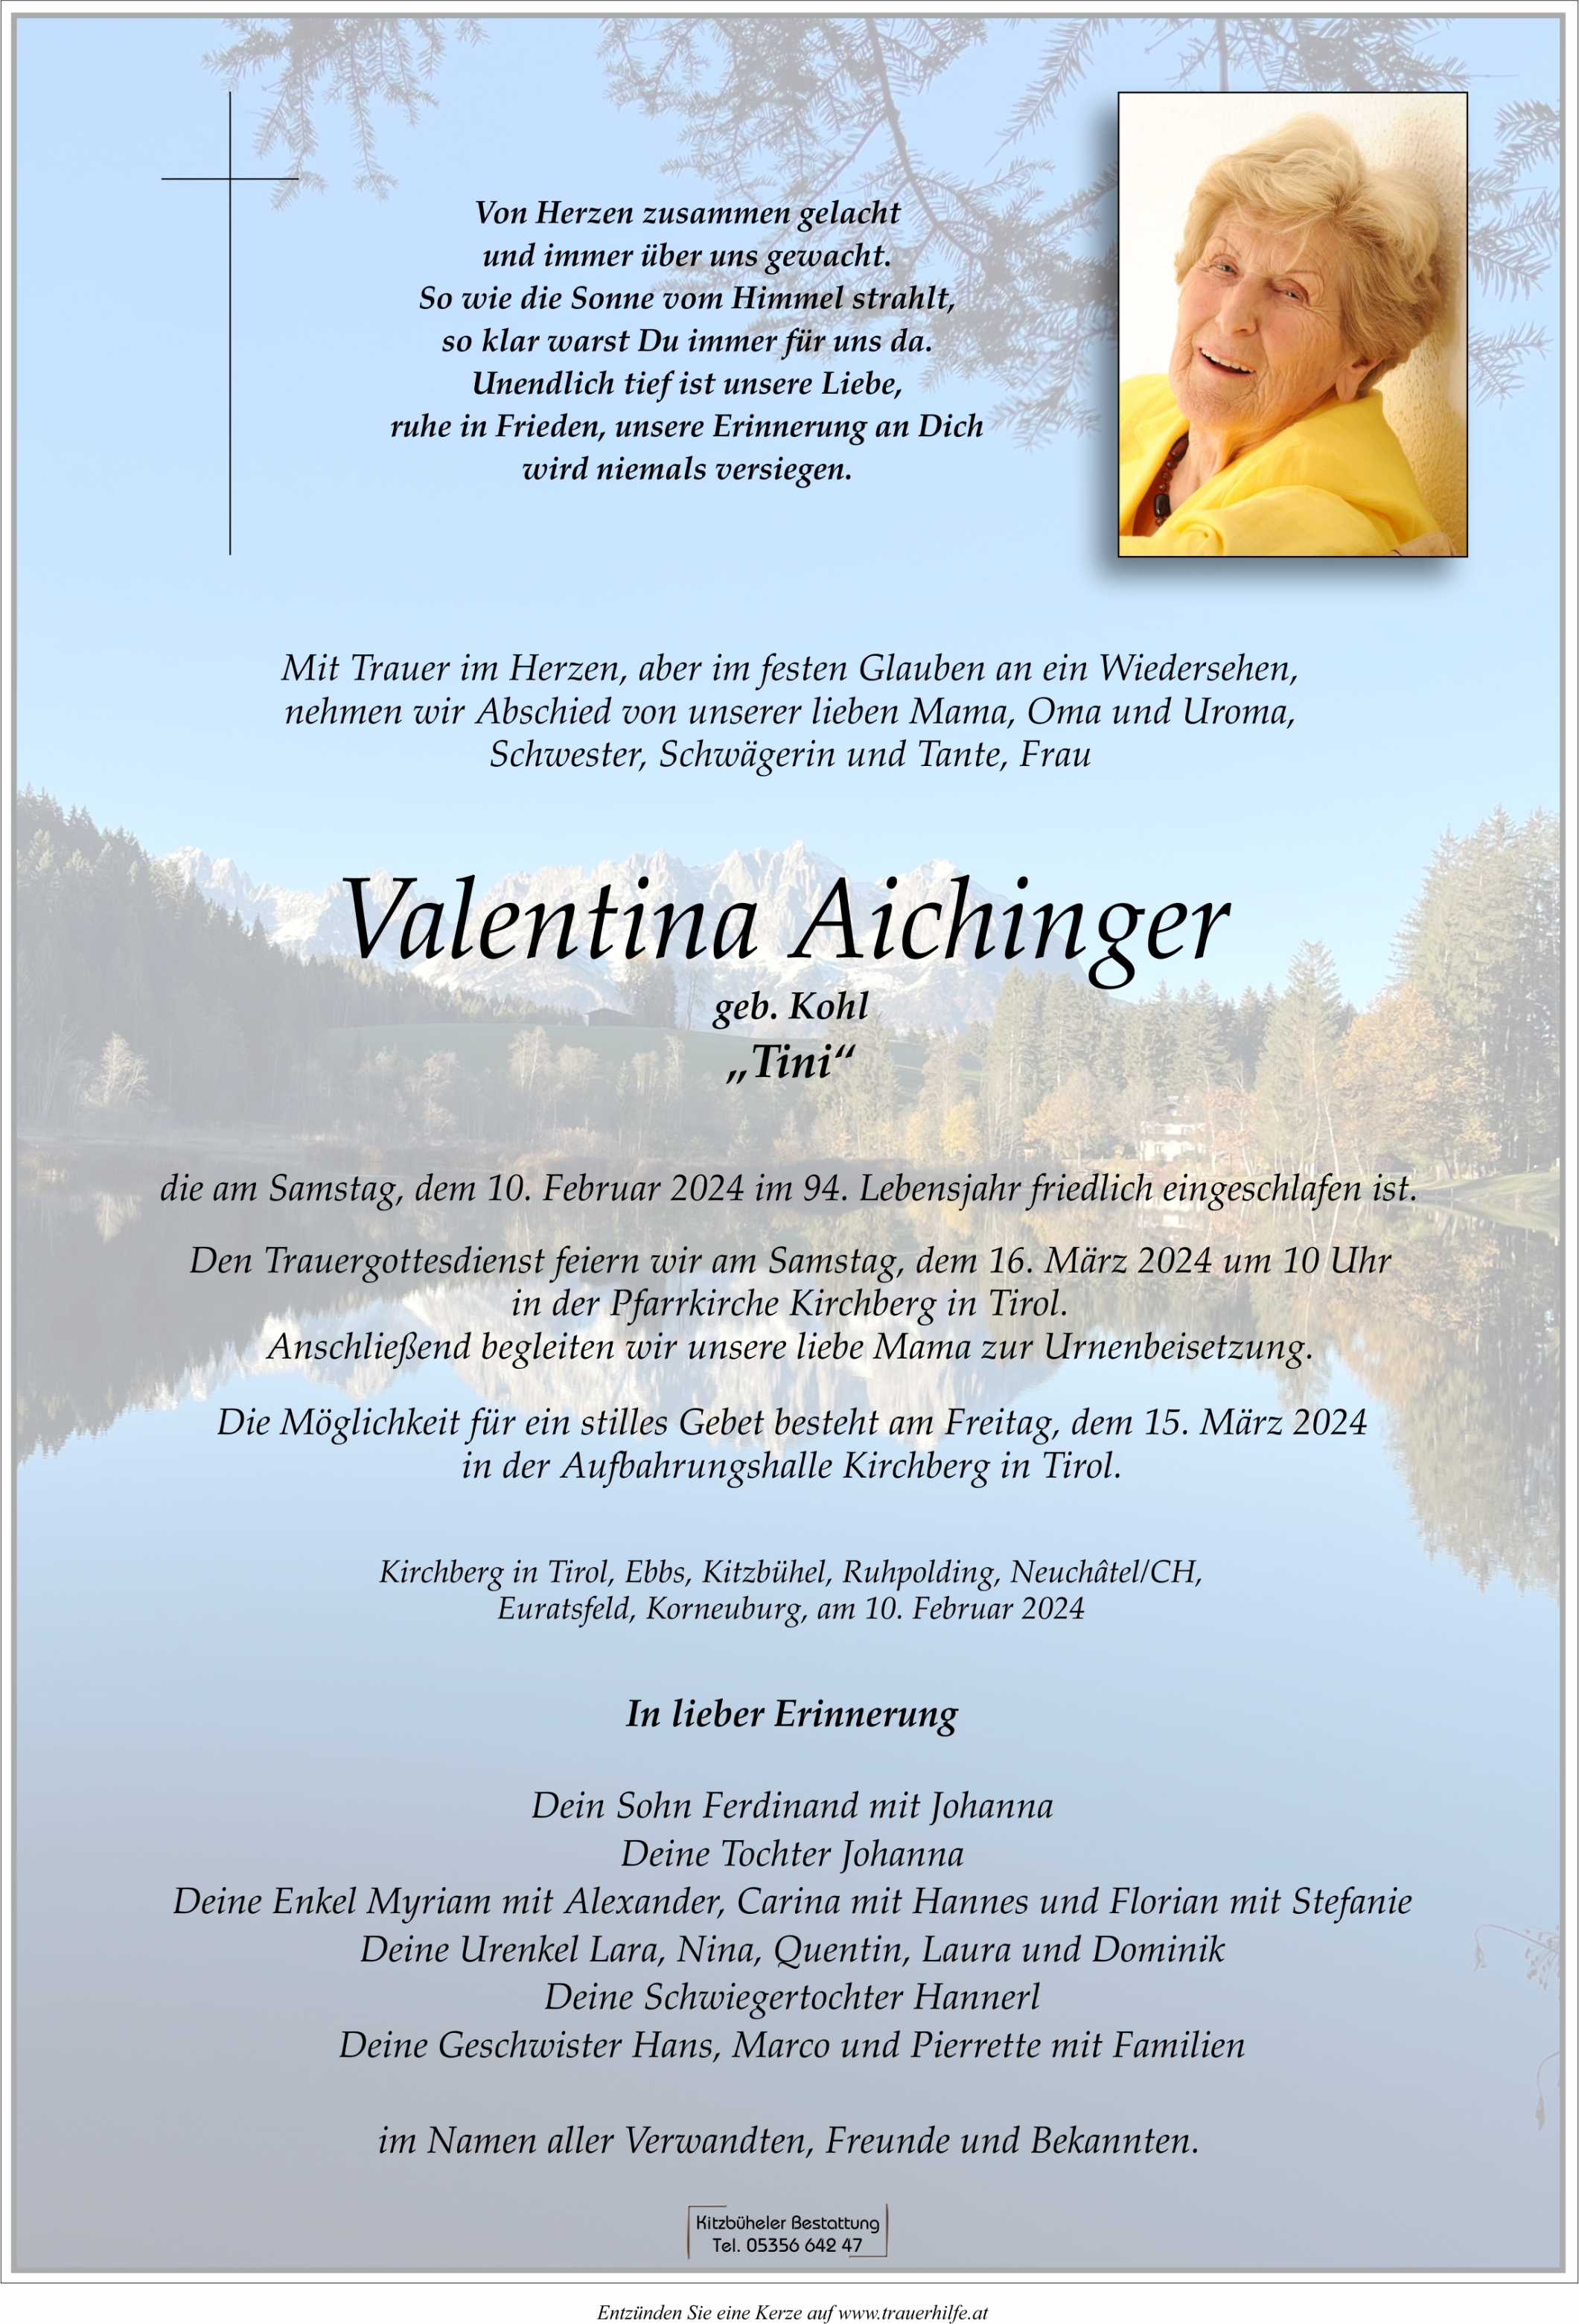 Valentina Aichinger